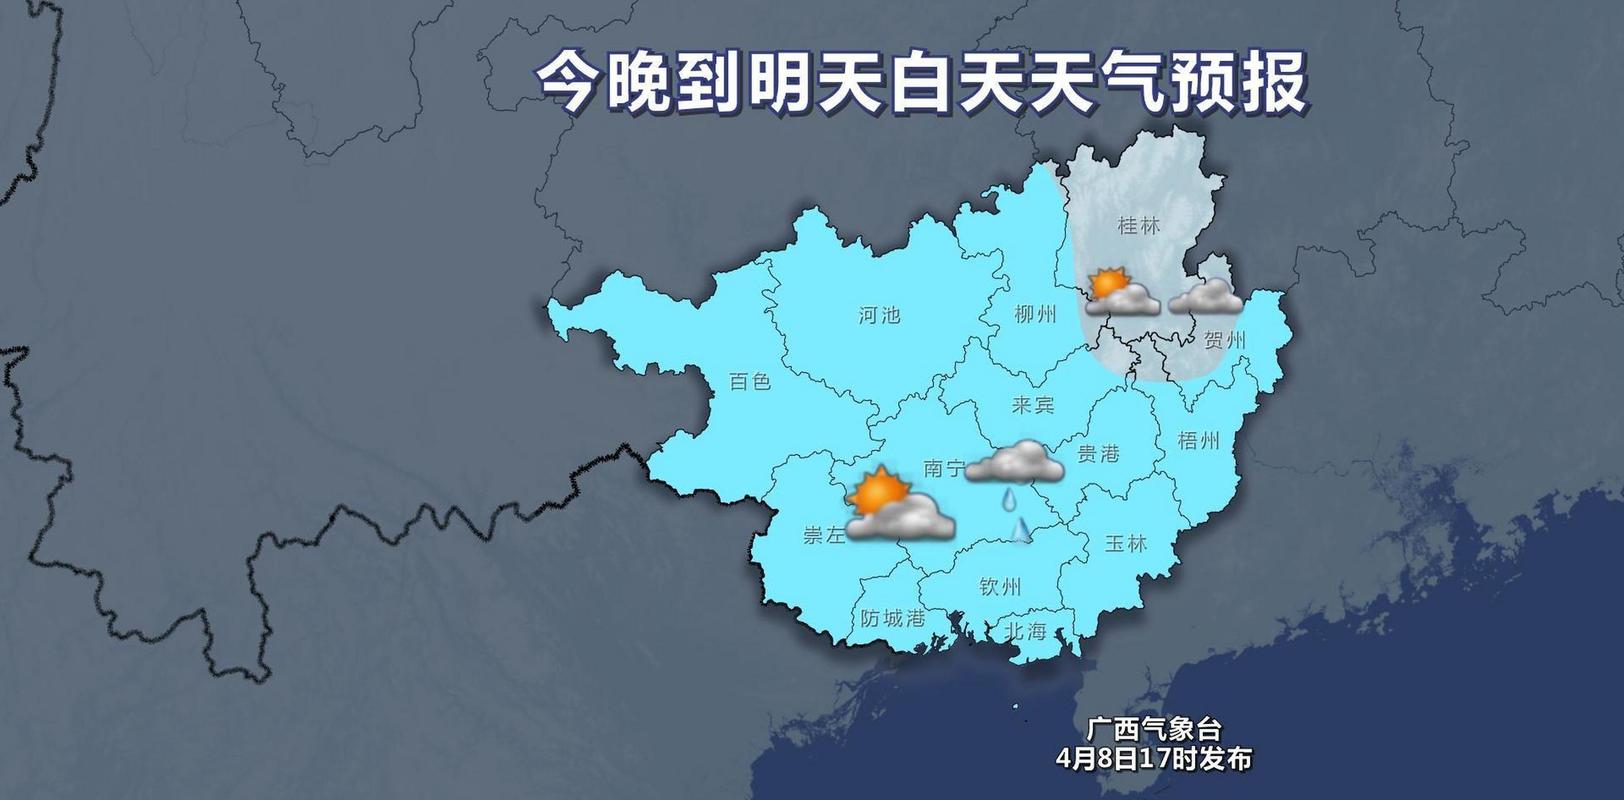 明日广西天气预告图片下载_明天广西的天气怎么样